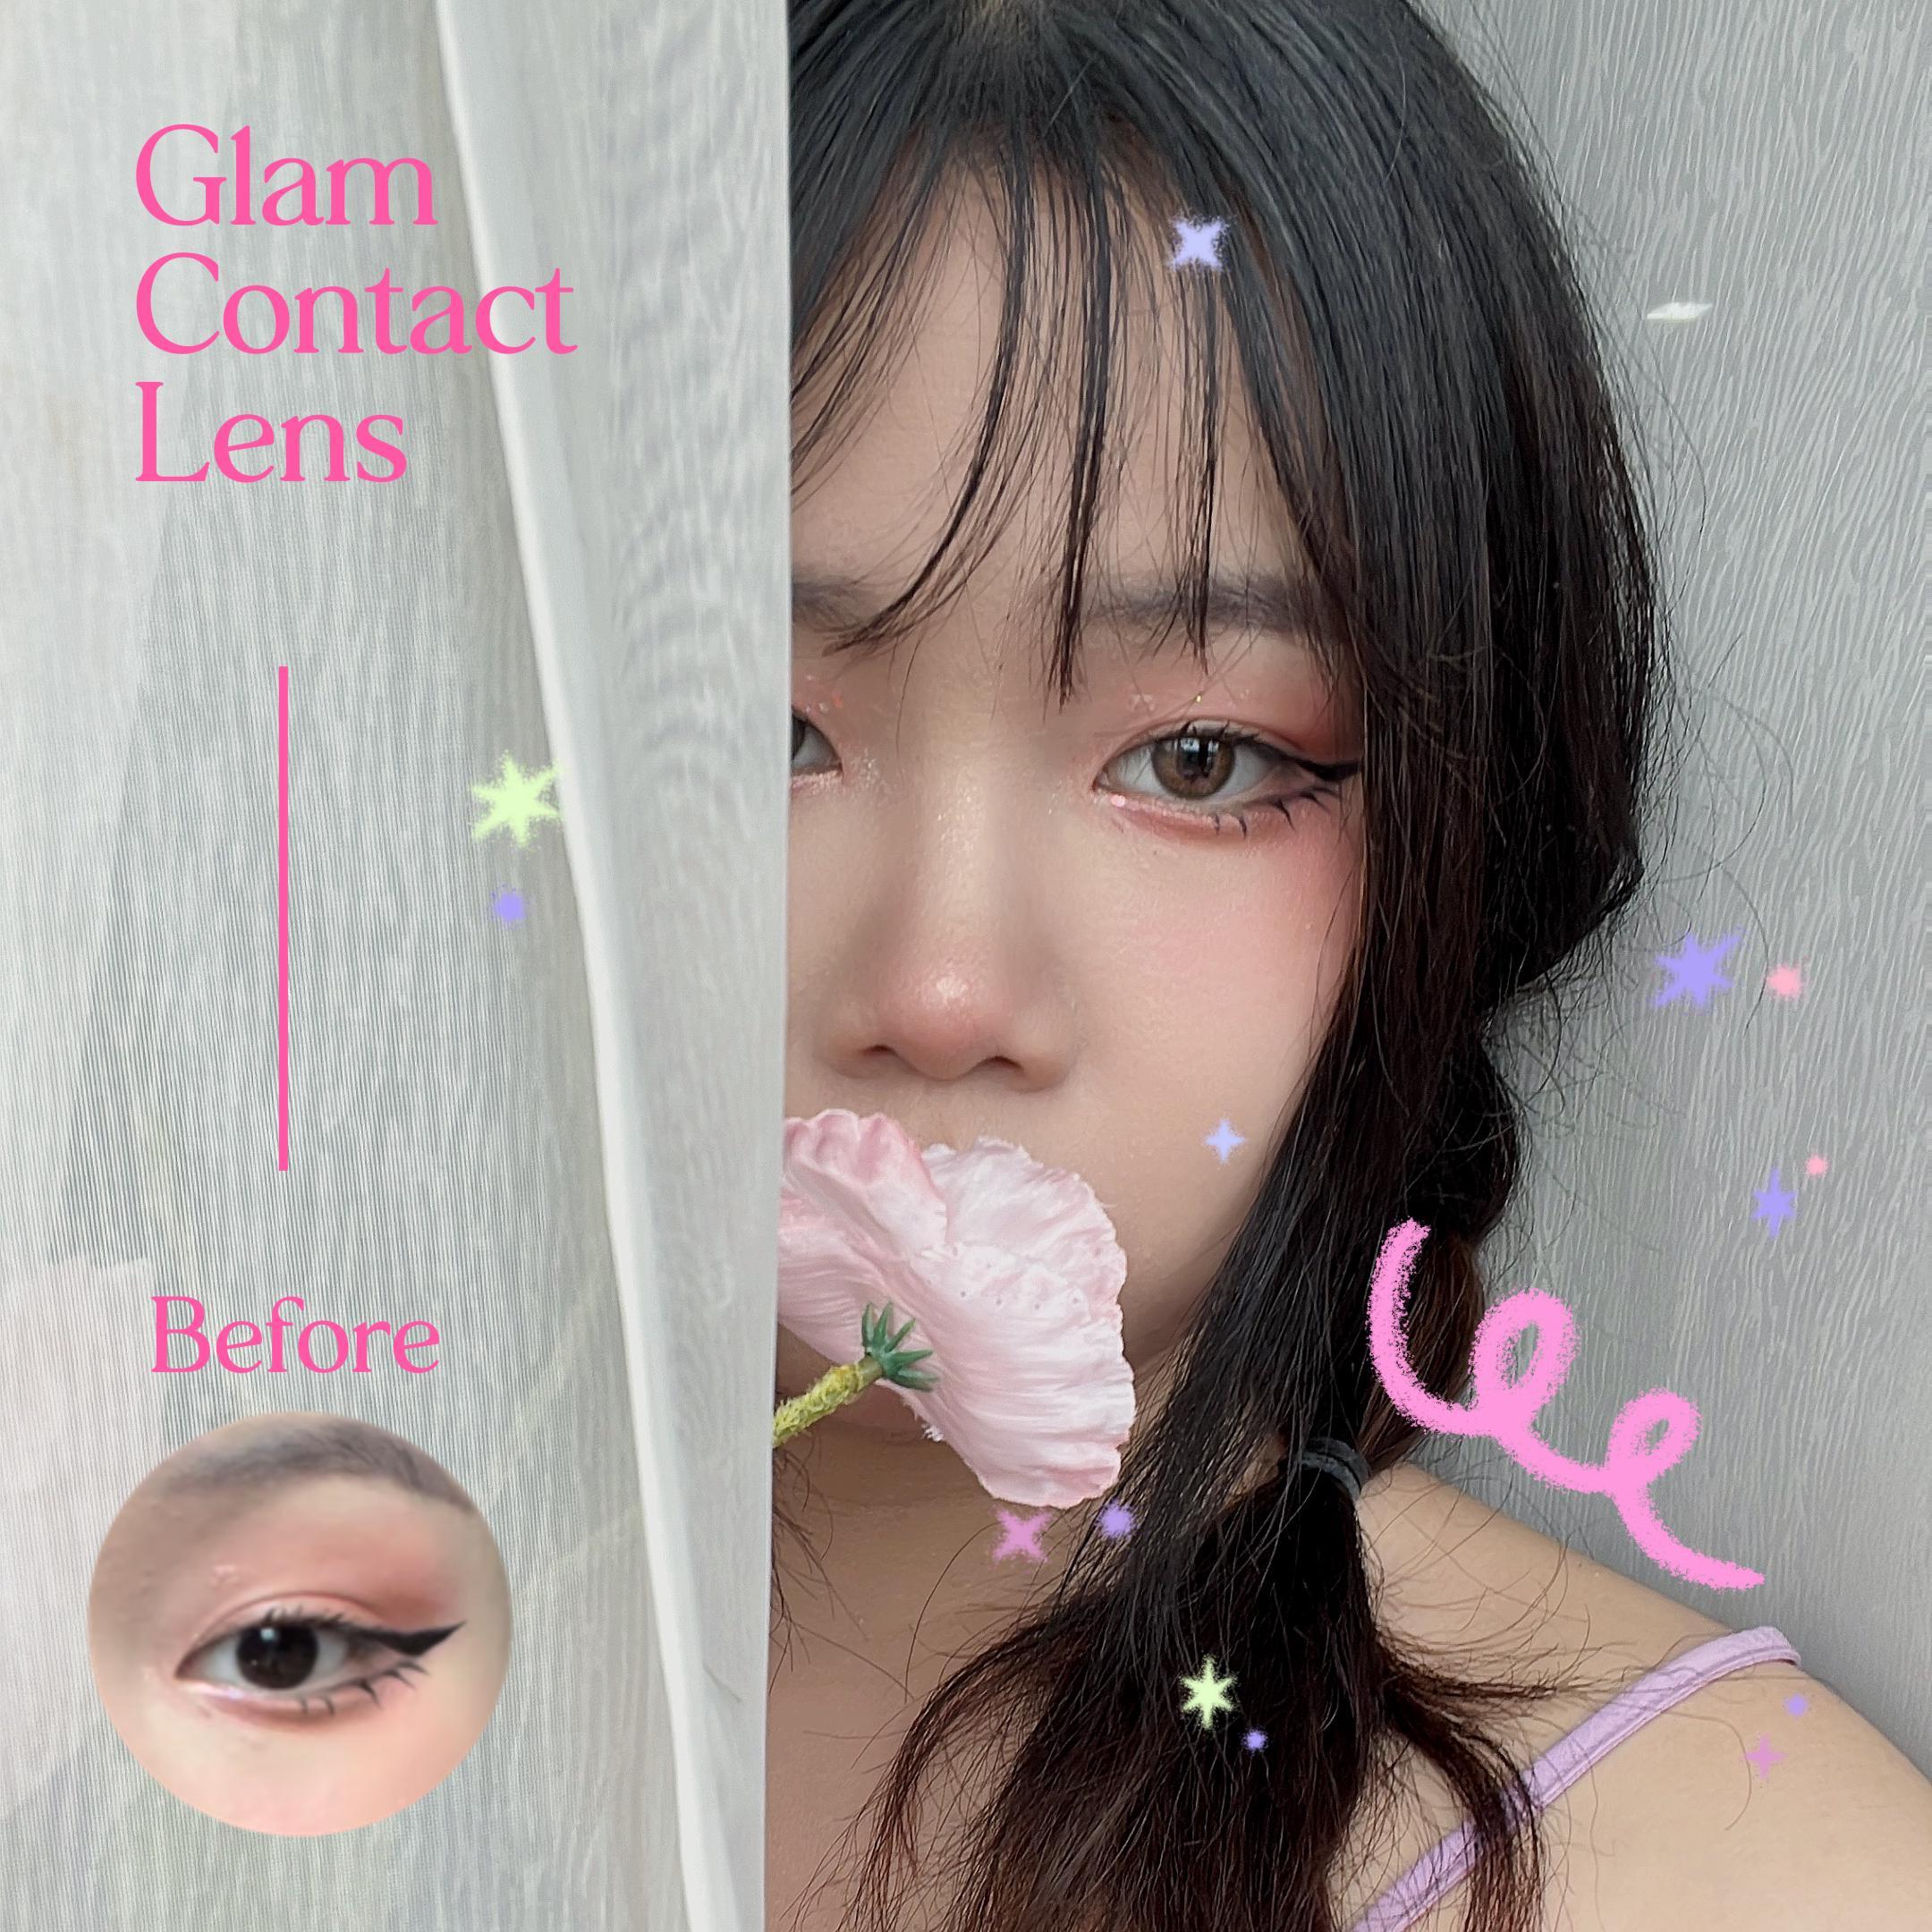 ภาพหน้าปก Glam Contact lens คอนแทคไฮยา เกิดมาก็ตาน้ำตาลเลย 💖👀✨ ที่:0